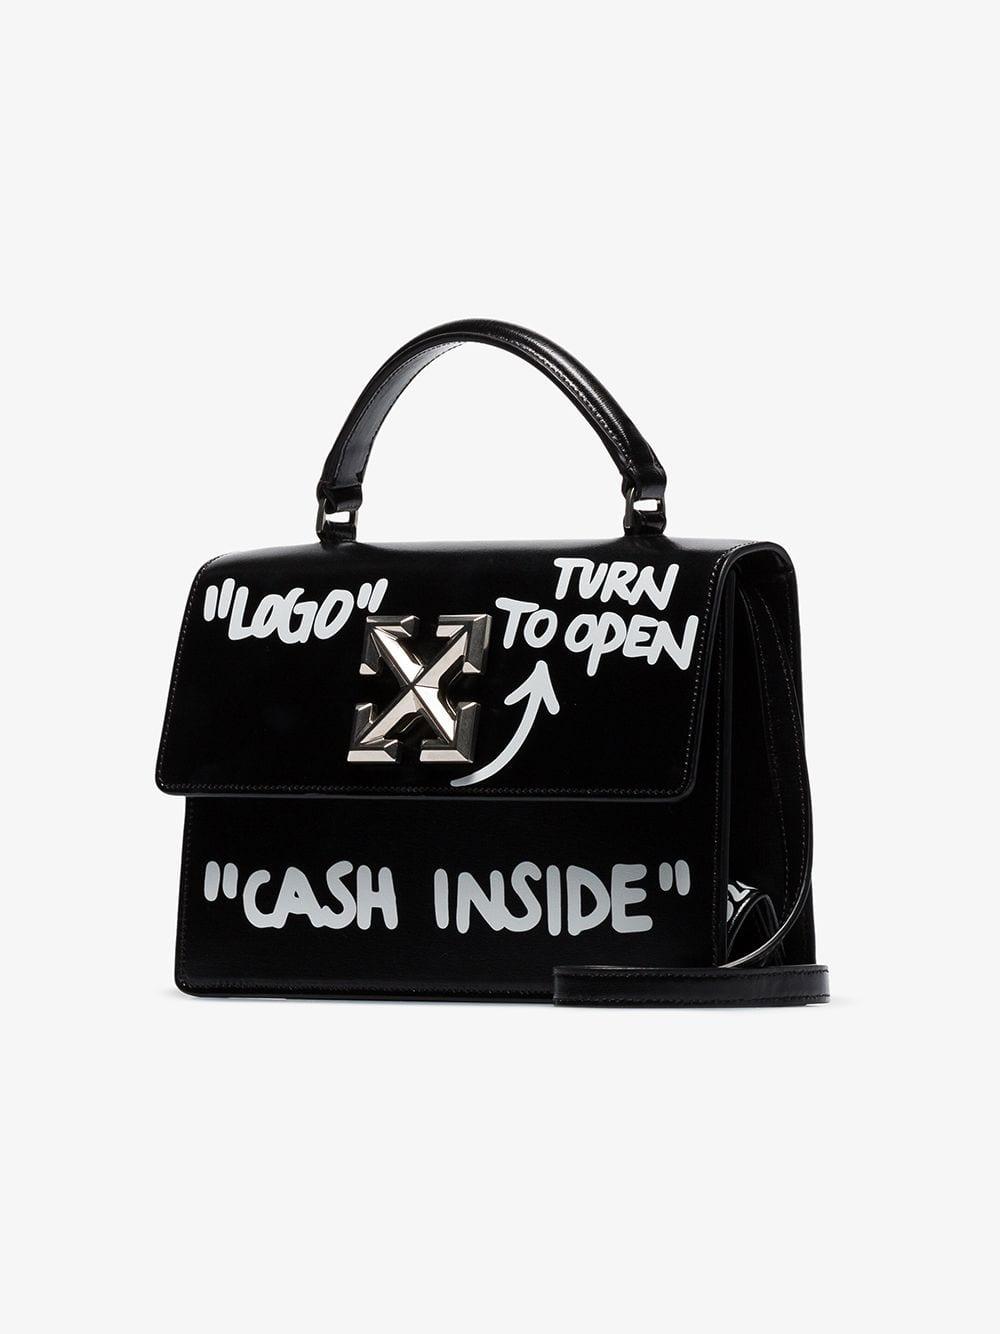 cash inside bag